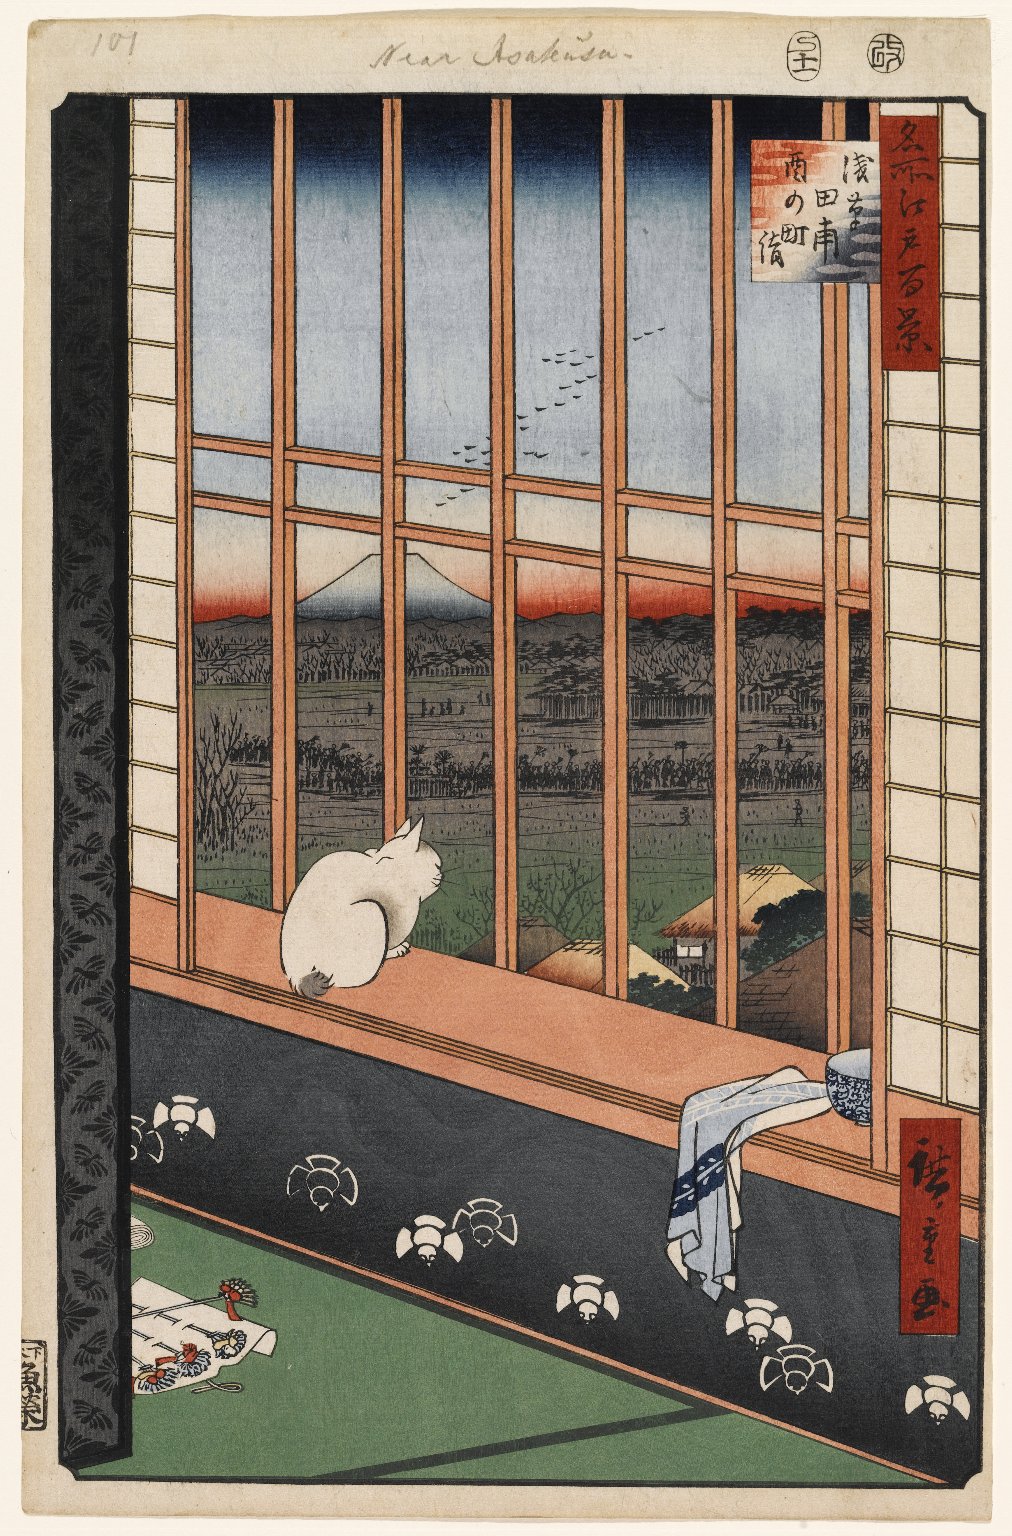 Rizières D’Asakusa et Festival de Torinomachi N°101 by  Hiroshige - 1857 - 36 x 23,5 cm Brooklyn Museum